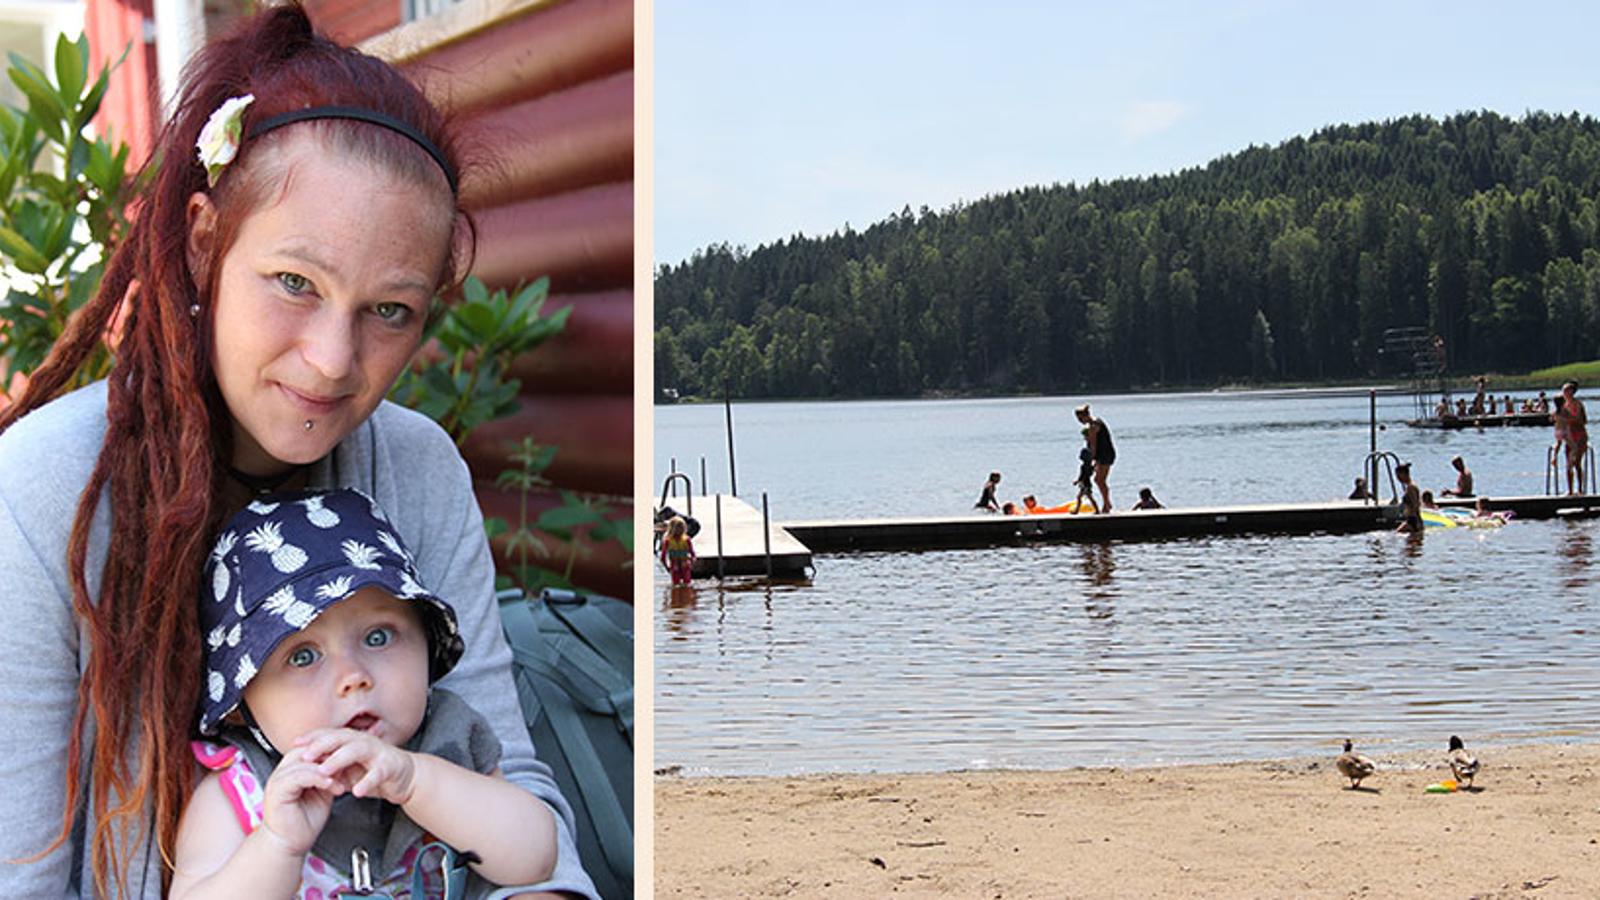 Till vänster: En mamma som håller i sitt barn och tittar in i kameran. Till höger: En badplats med personer som badar vid en brygga.